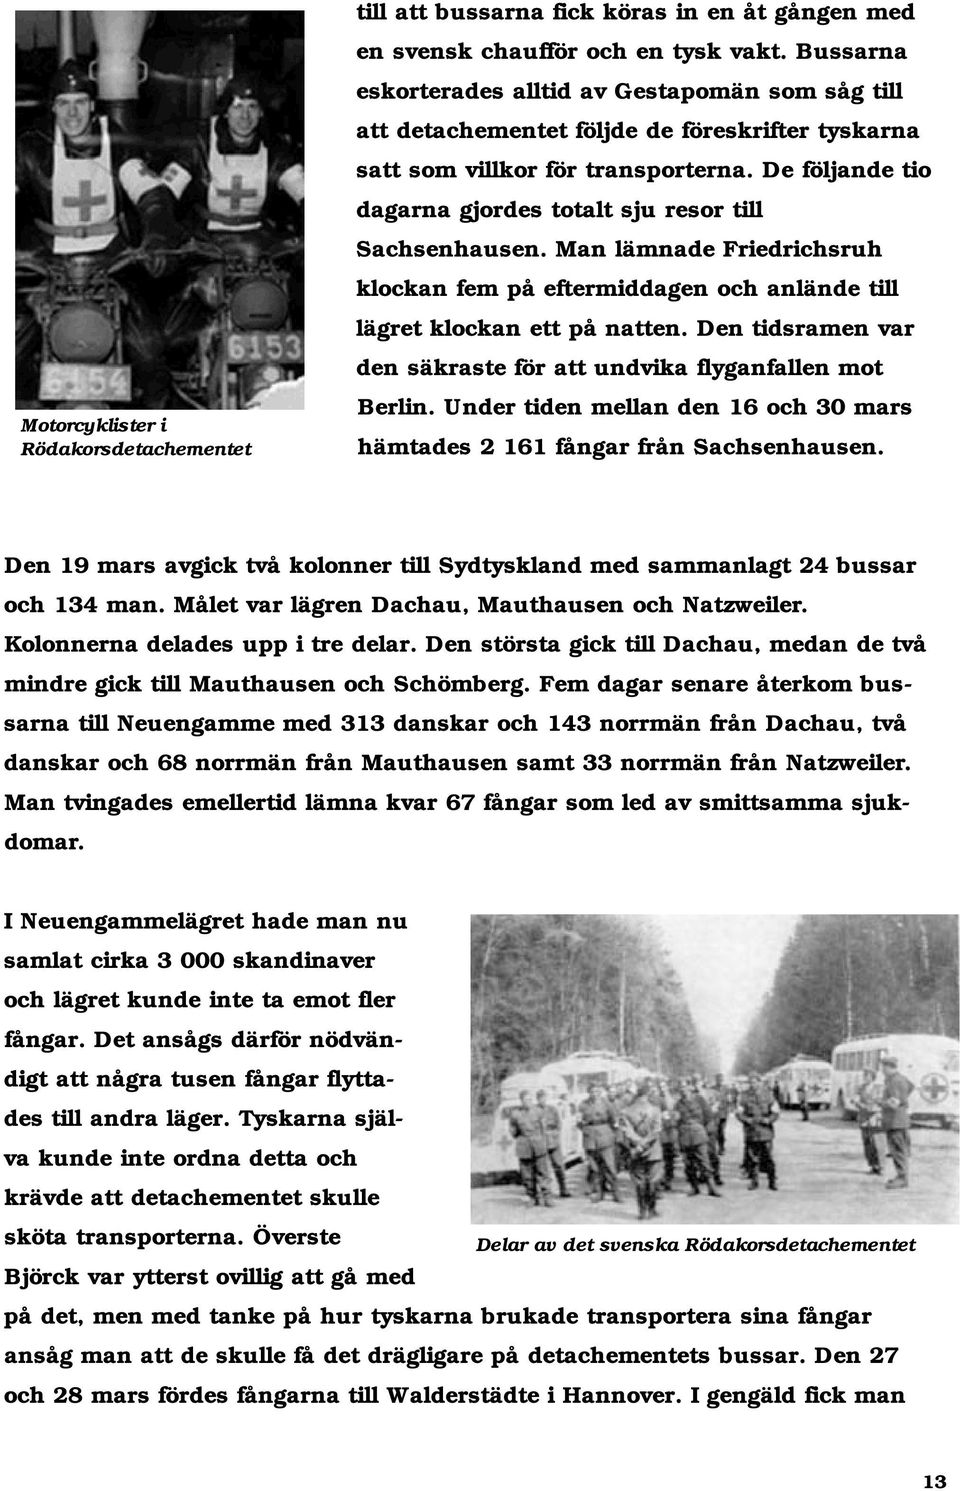 De följande tio dagarna gjordes totalt sju resor till Sachsenhausen. Man lämnade Friedrichsruh klockan fem på eftermiddagen och anlände till lägret klockan ett på natten.